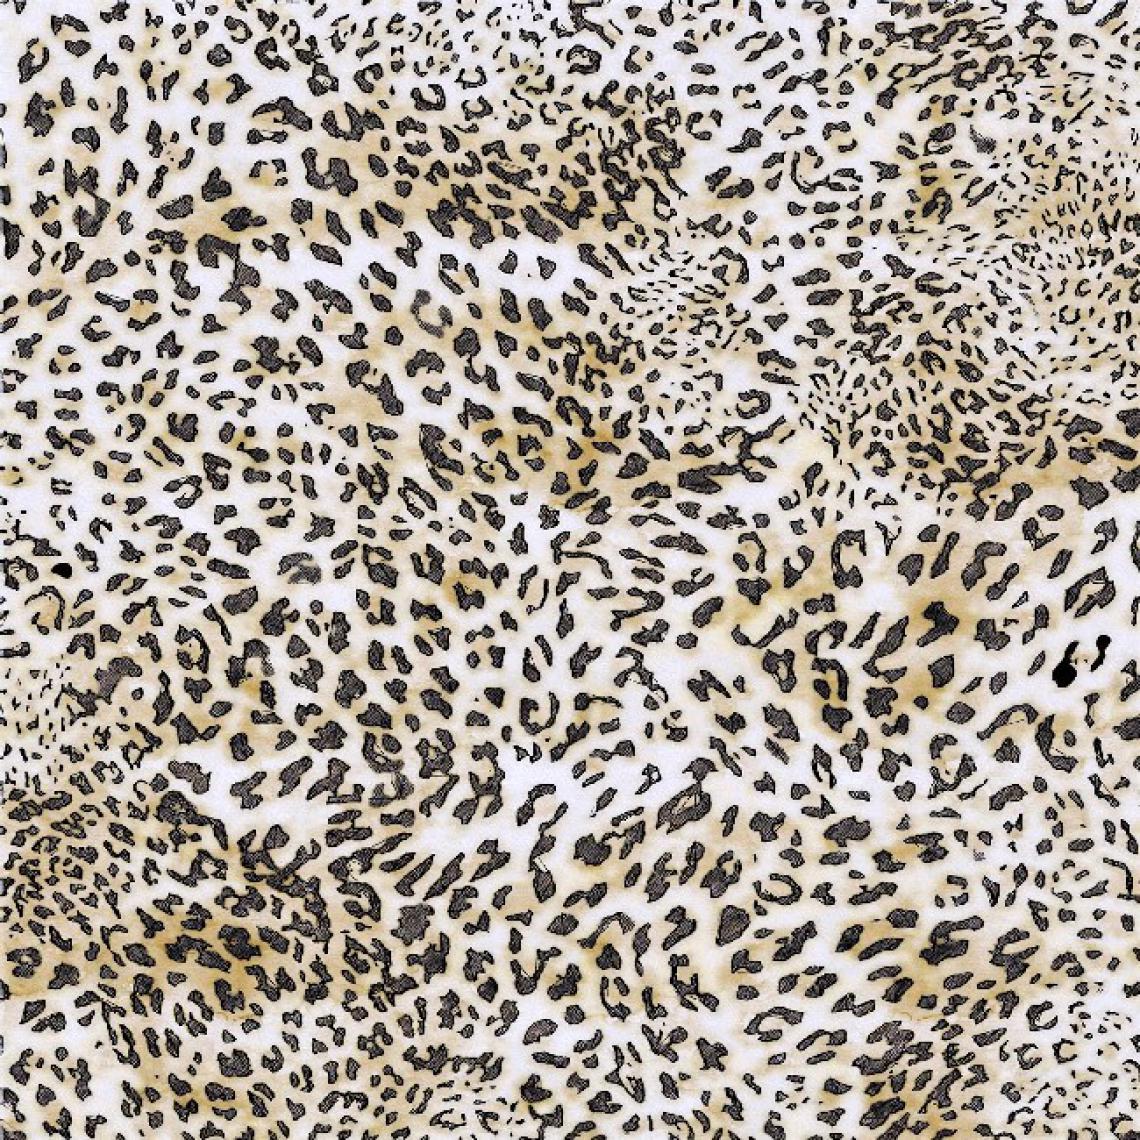 Homemania - HOMEMANIA Tapis Imprimé Leopard Dream - Animaux - Décoration de Maison - Antidérapant - Pour Salon, séjour, chambre à coucher - Multicolore en Polyester, Coton, 80 x 50 cm - Tapis